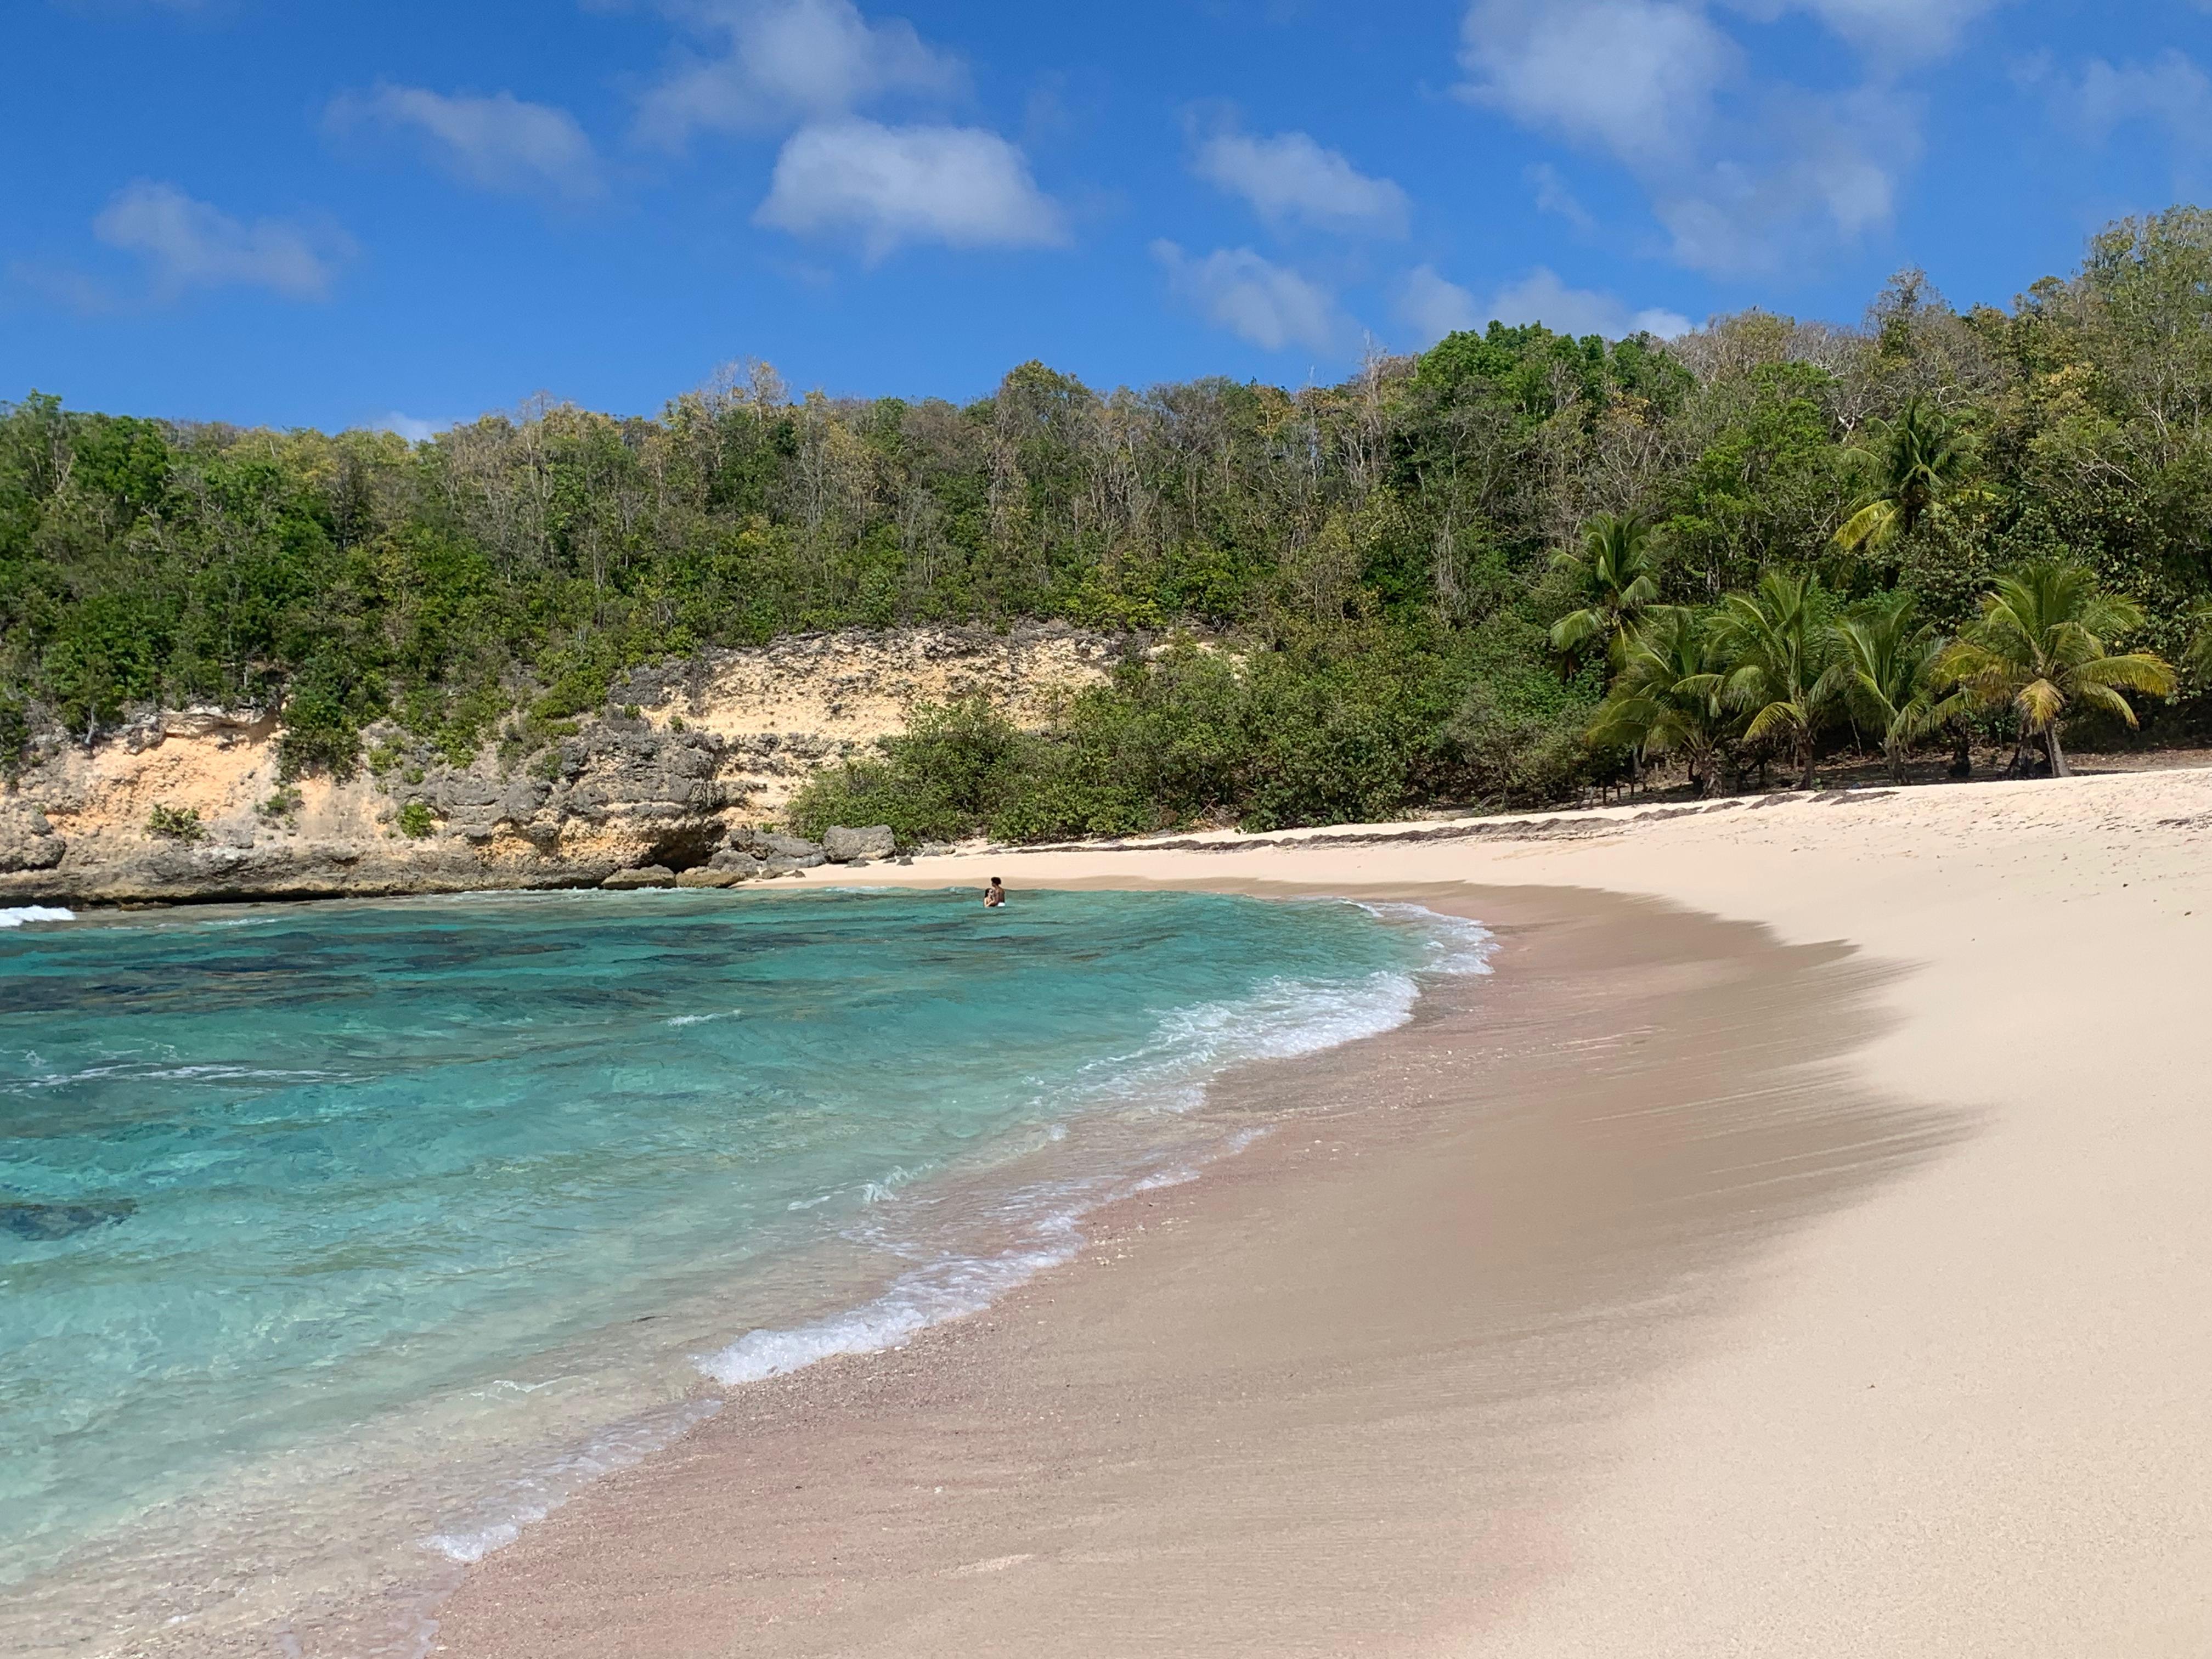     La Guadeloupe bonne dernière dans un top 20 des destinations voyages du mois de mars

